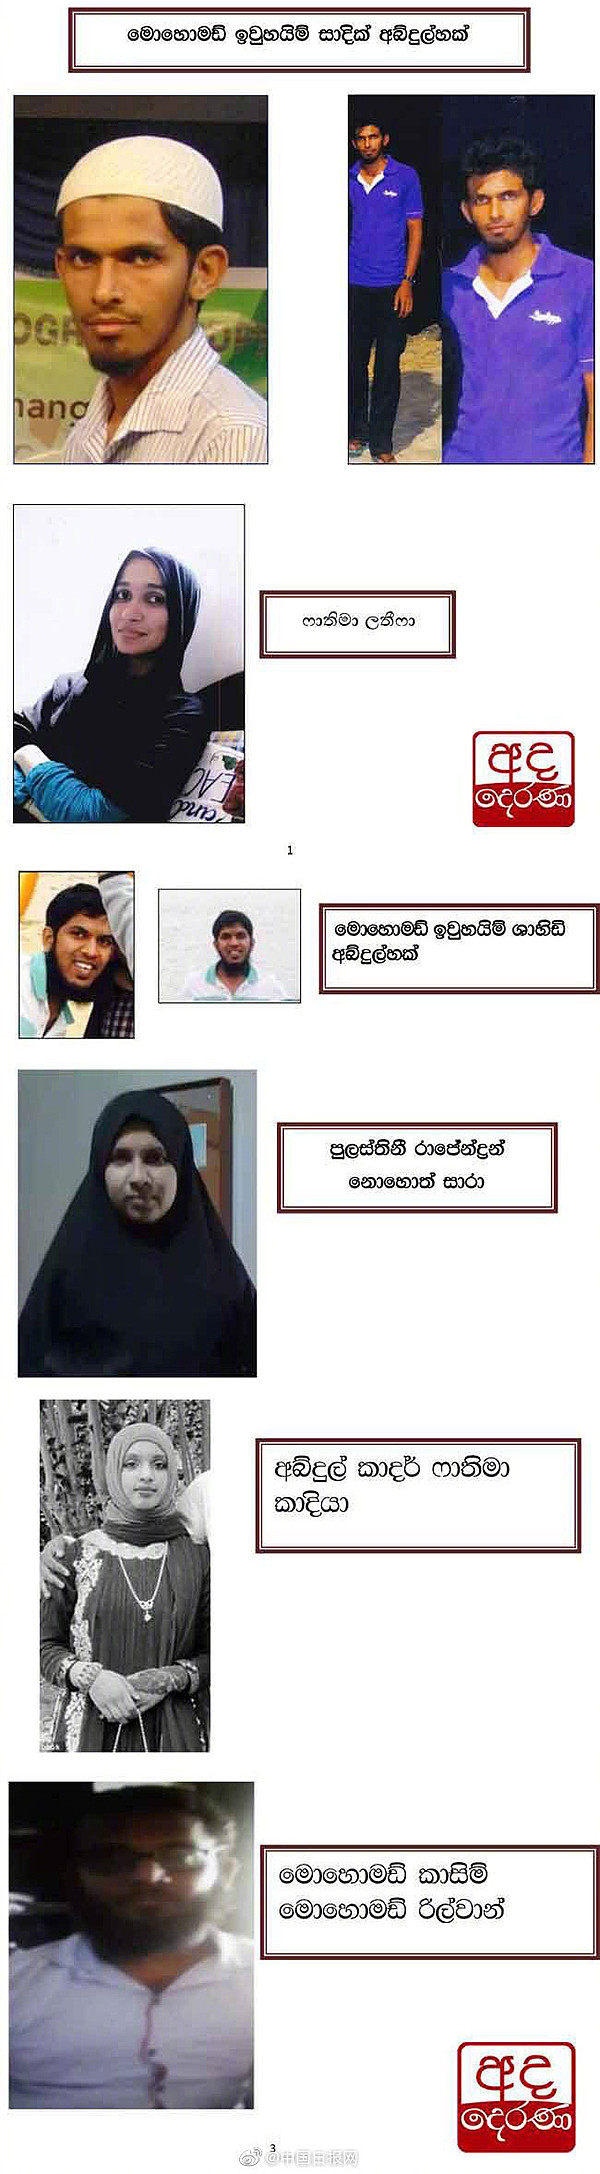 斯里兰卡公布6名爆炸案疑犯照片和姓名 含3名女性